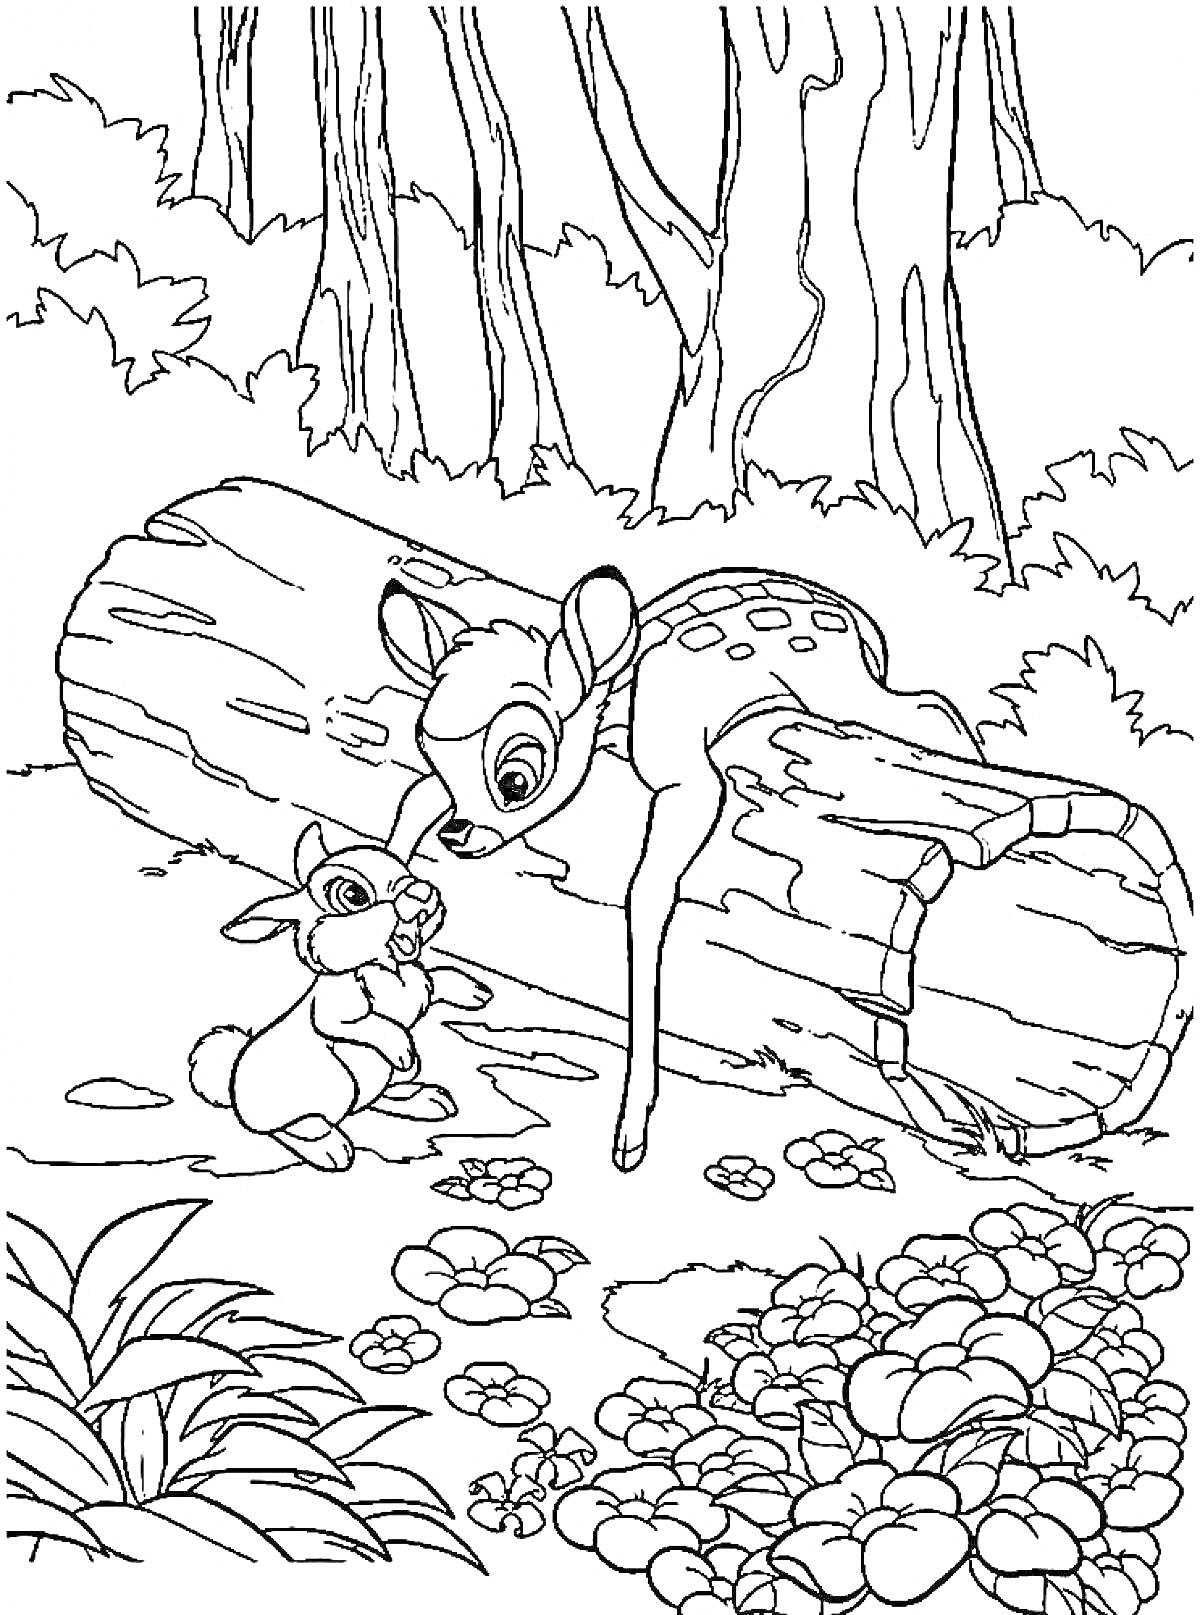 Раскраска Бэмби и кролик у поваленного дерева в лесу